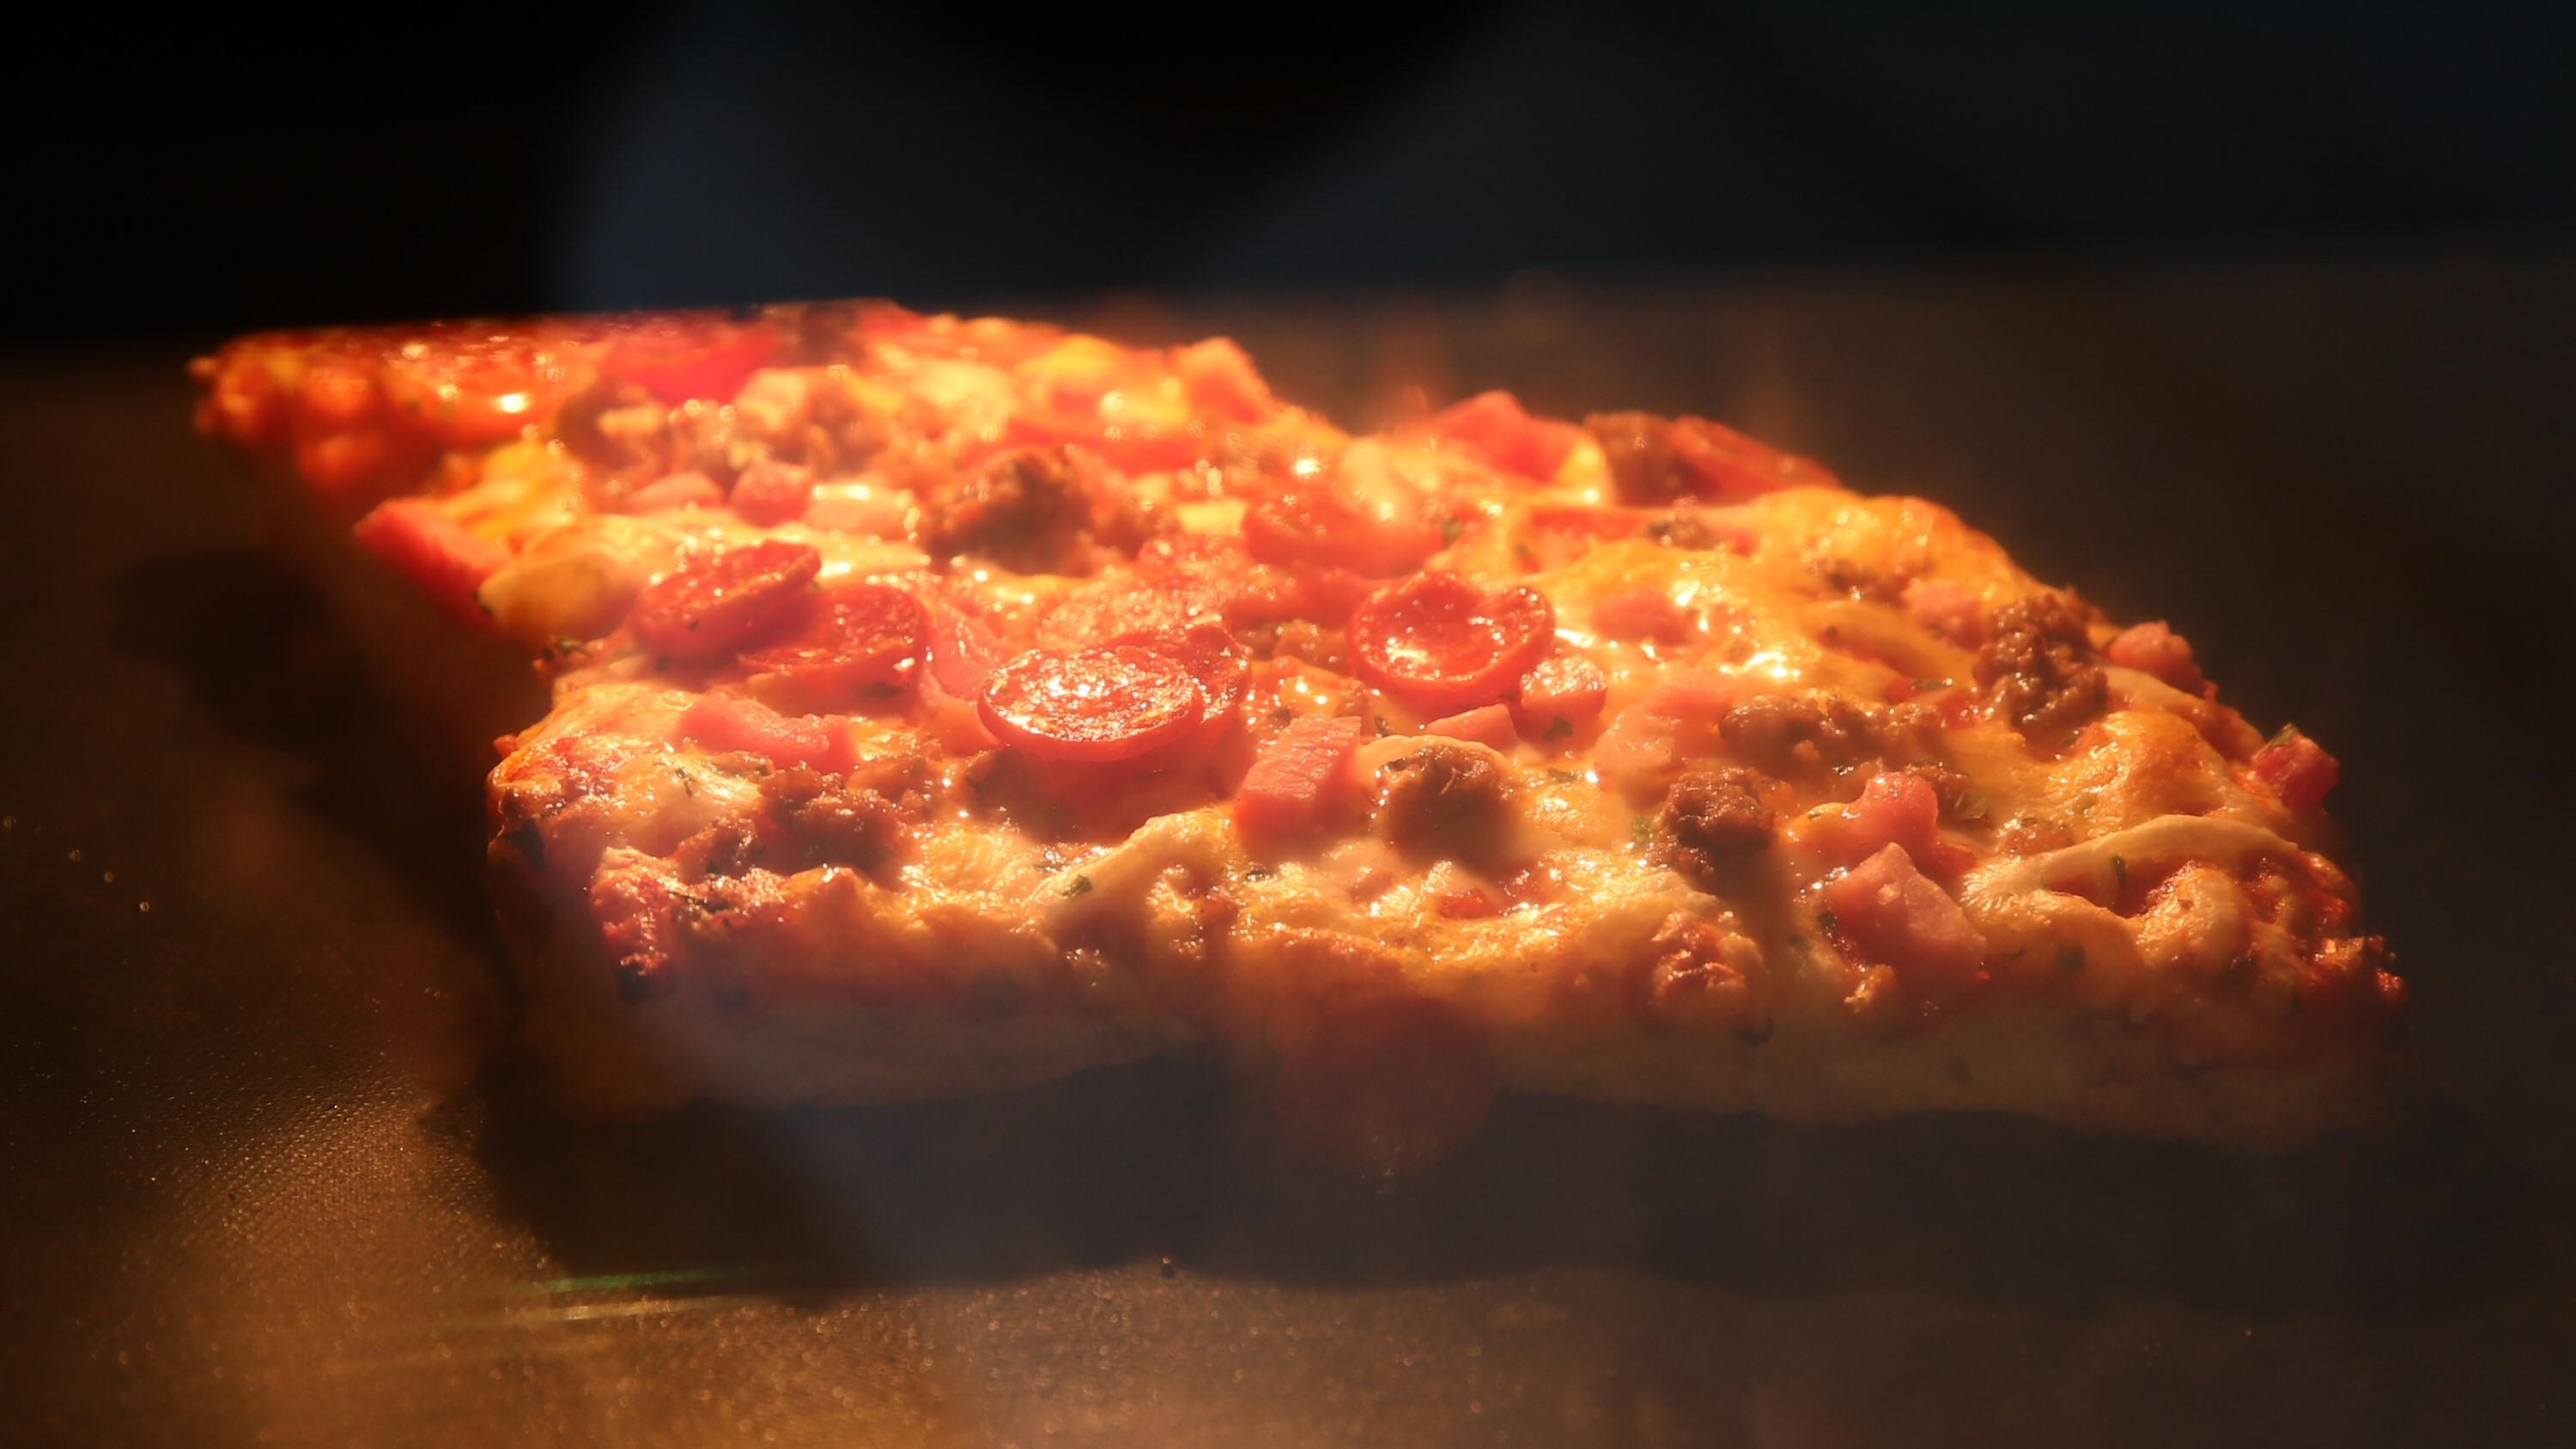 En enslig pizzabit i stekeovnen er ikke særlig energismart.